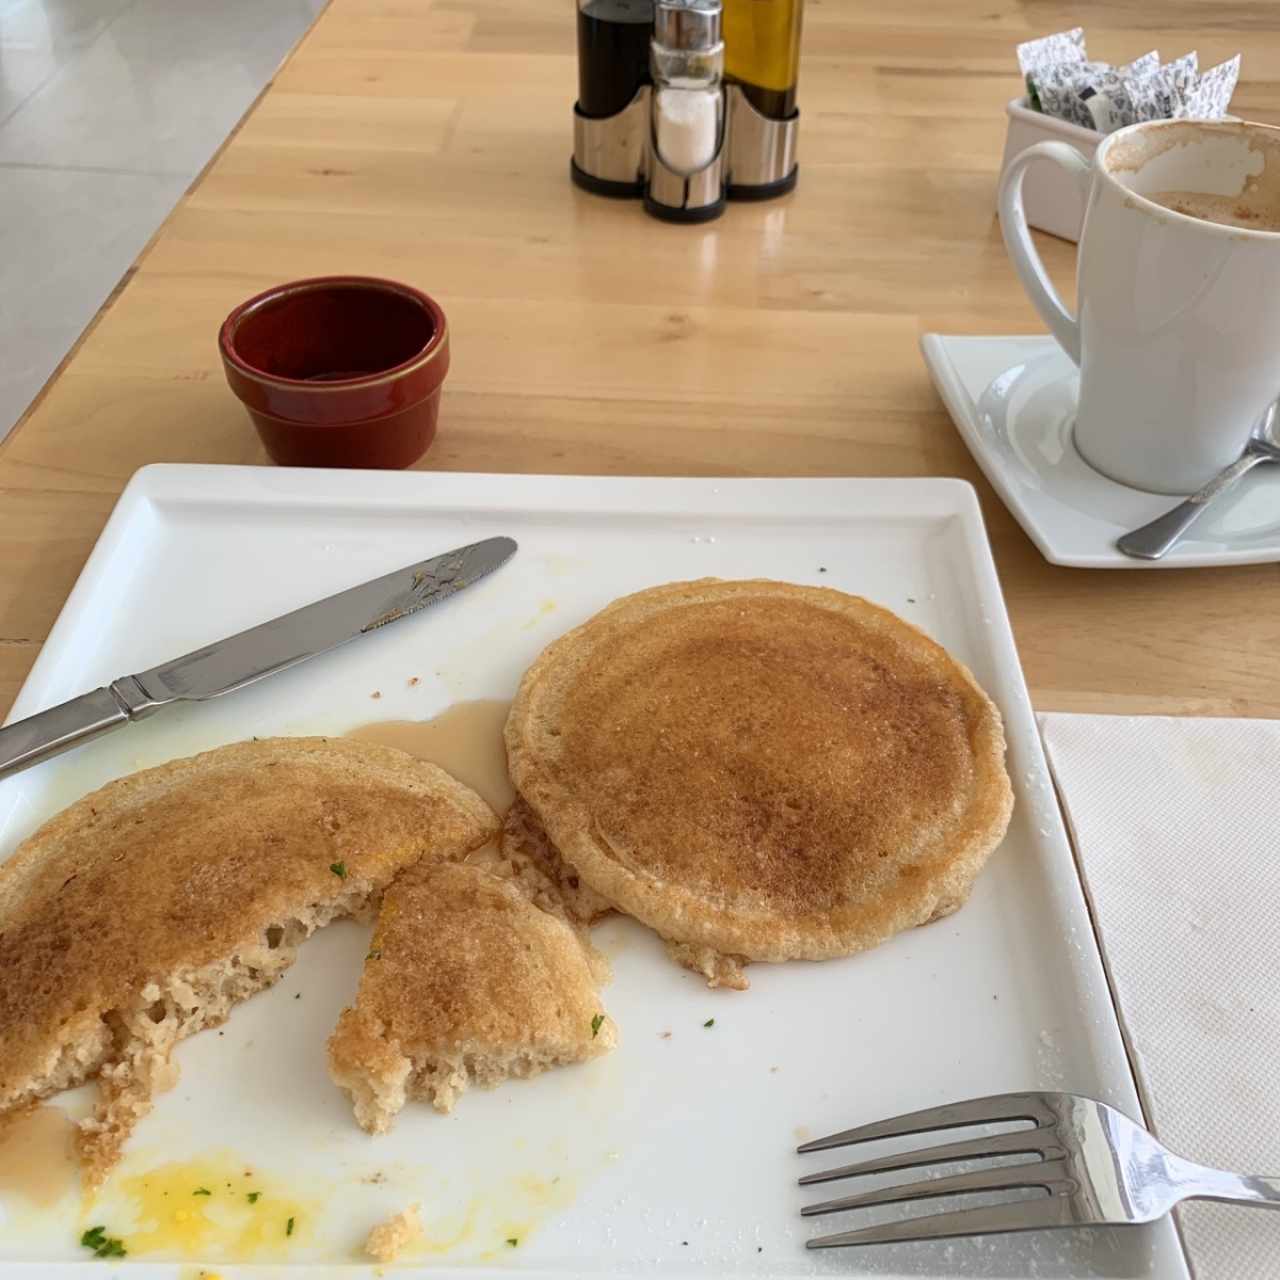 pancakes con huevos, tocino (pero no sobrevivieron a la foto😂)